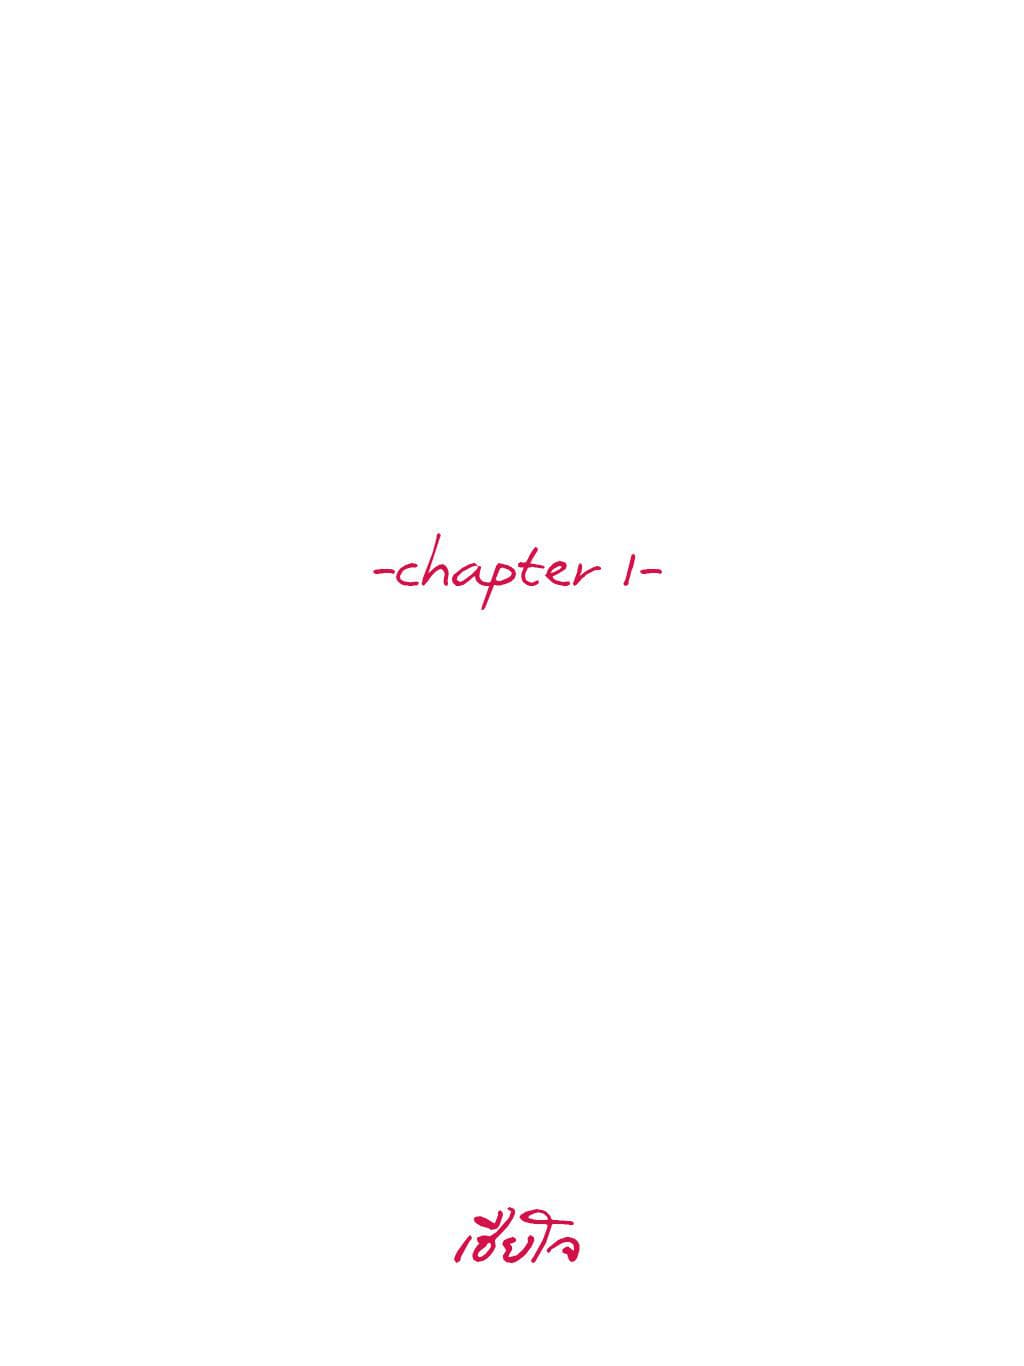 chapter 1 - เฮียโจ